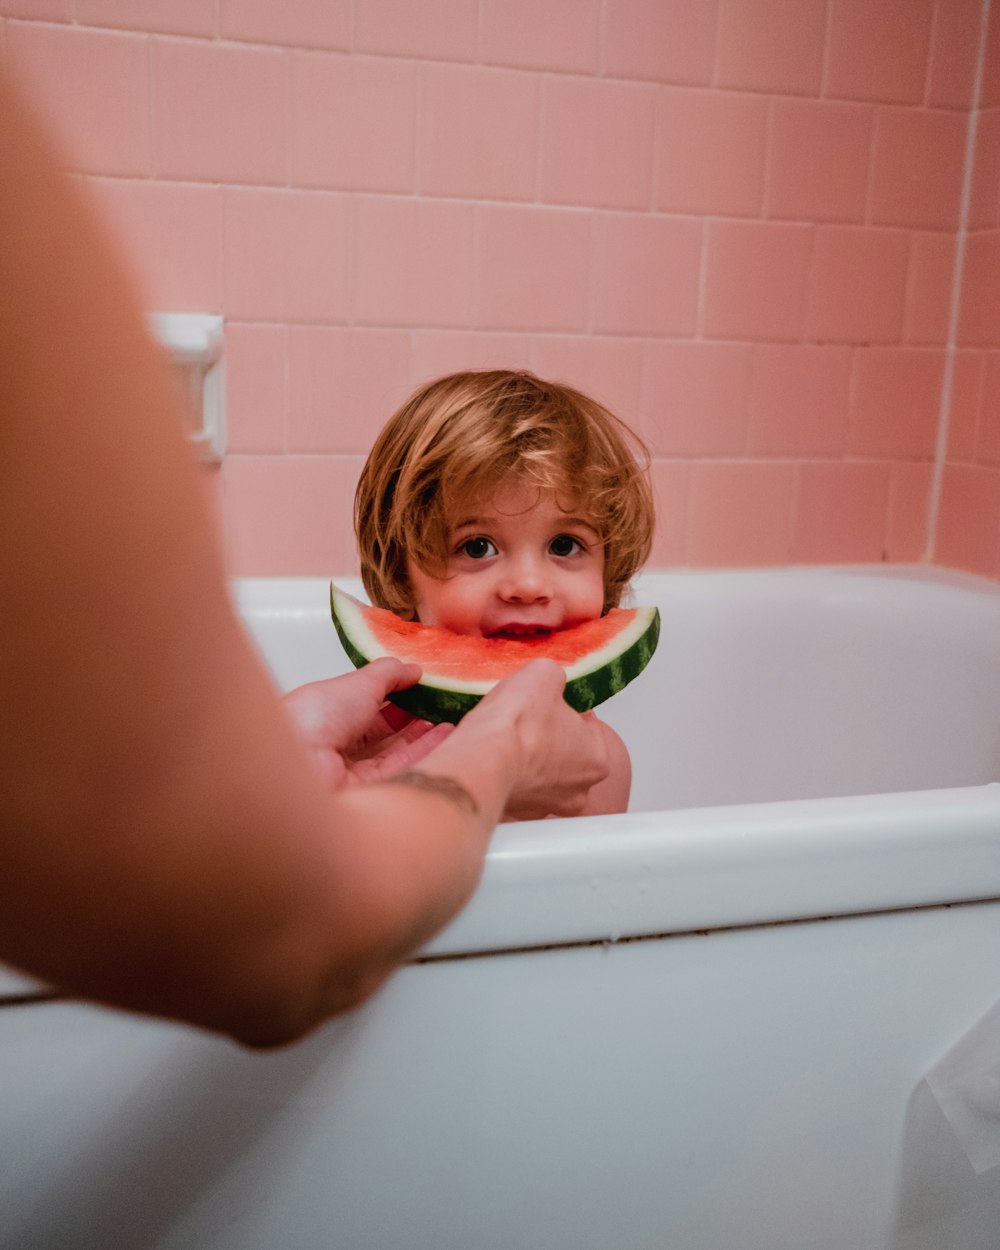 photo of boy in bathtub eating watermelon